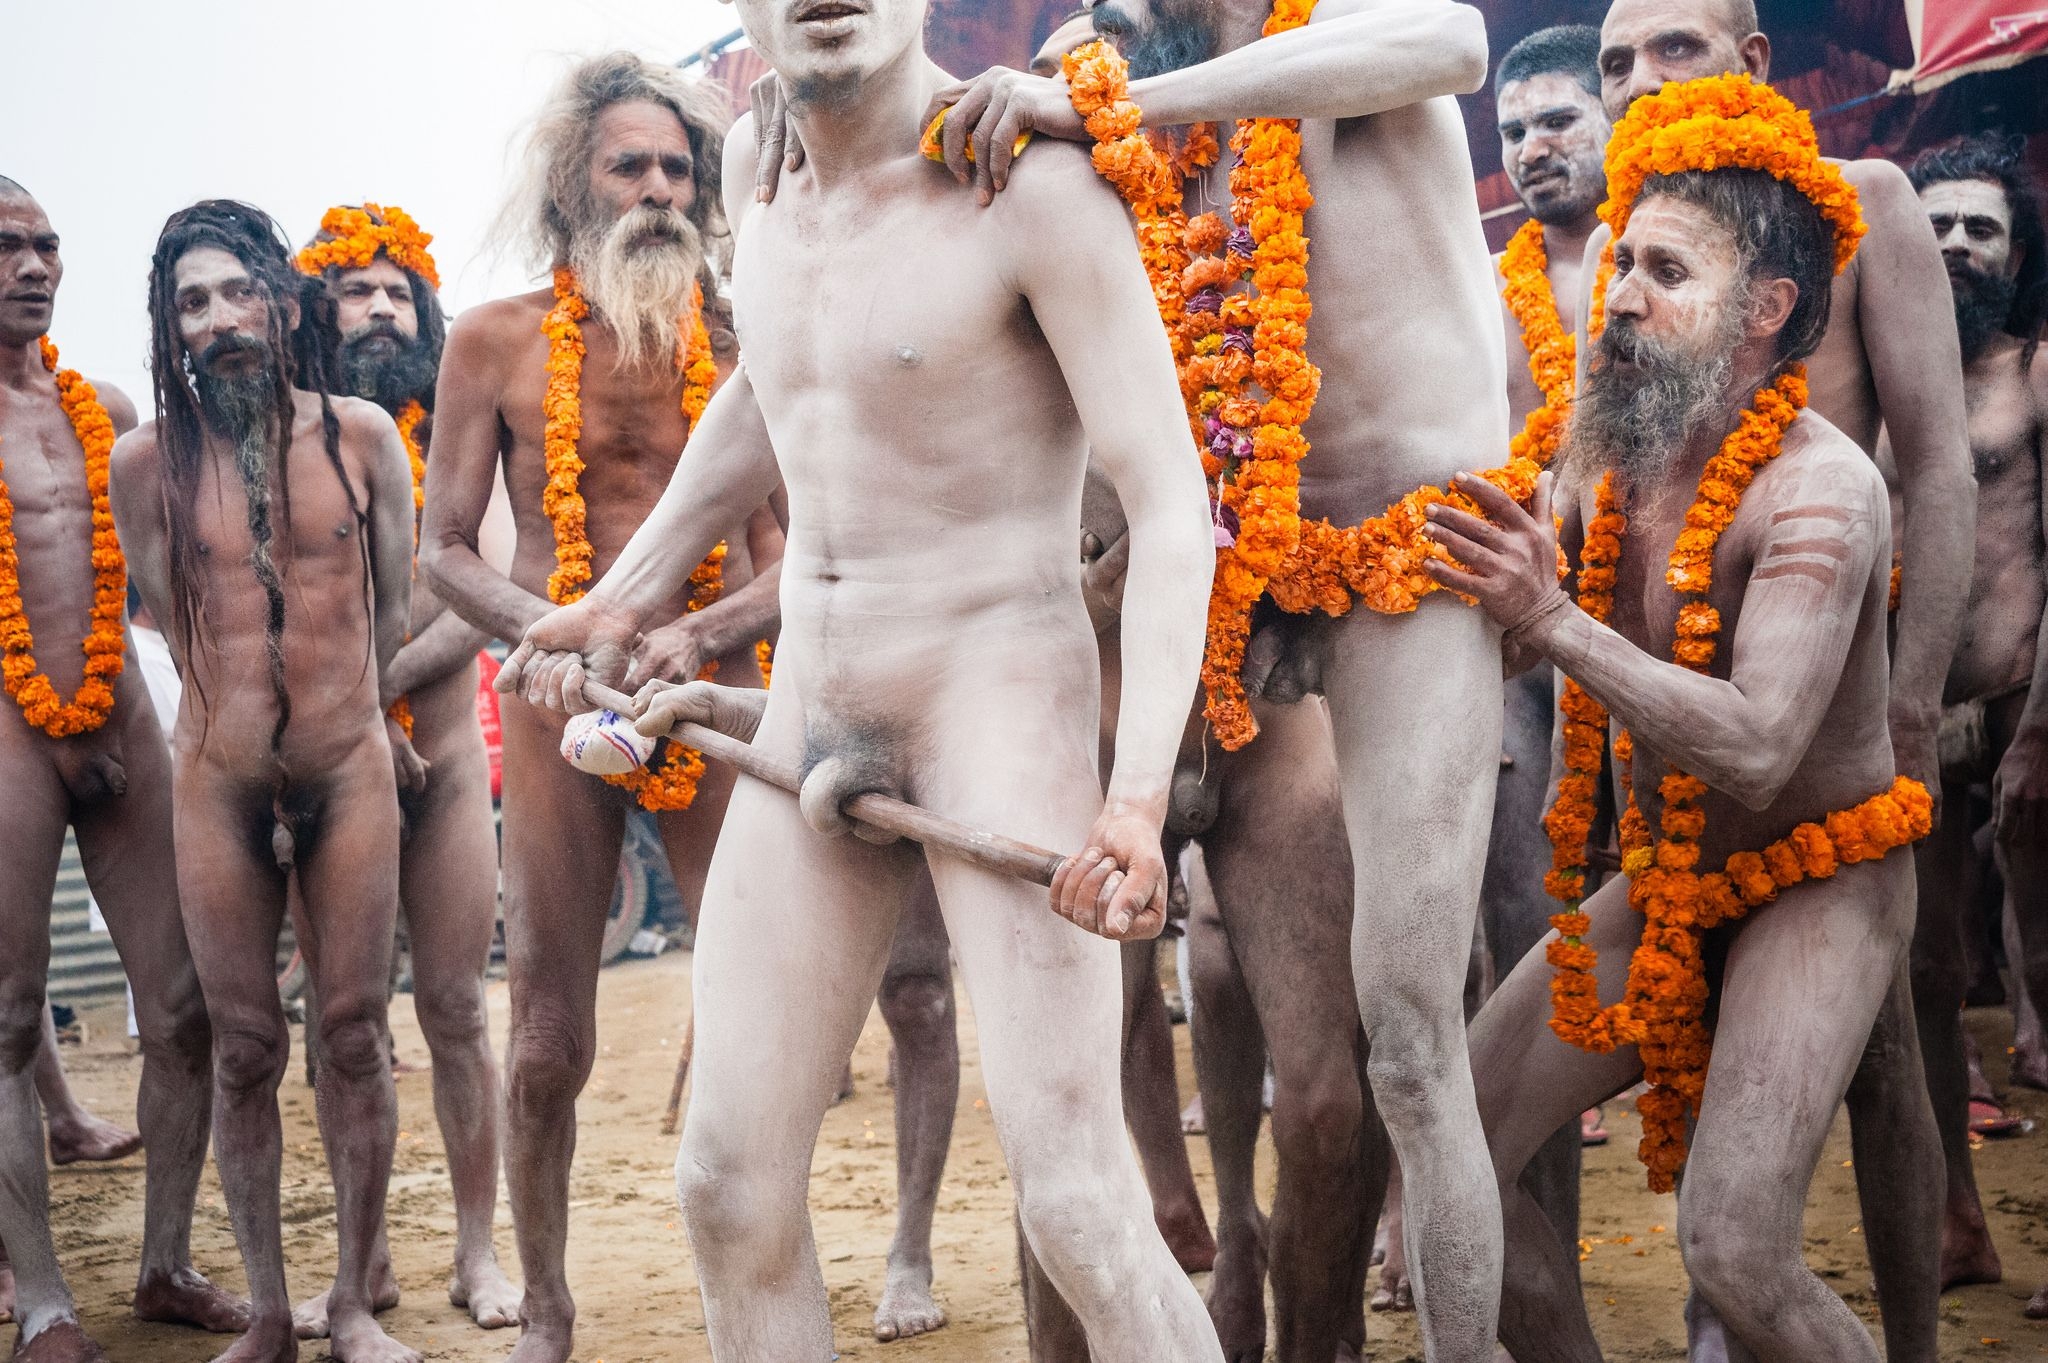 племя с голыми мужиками фото 15